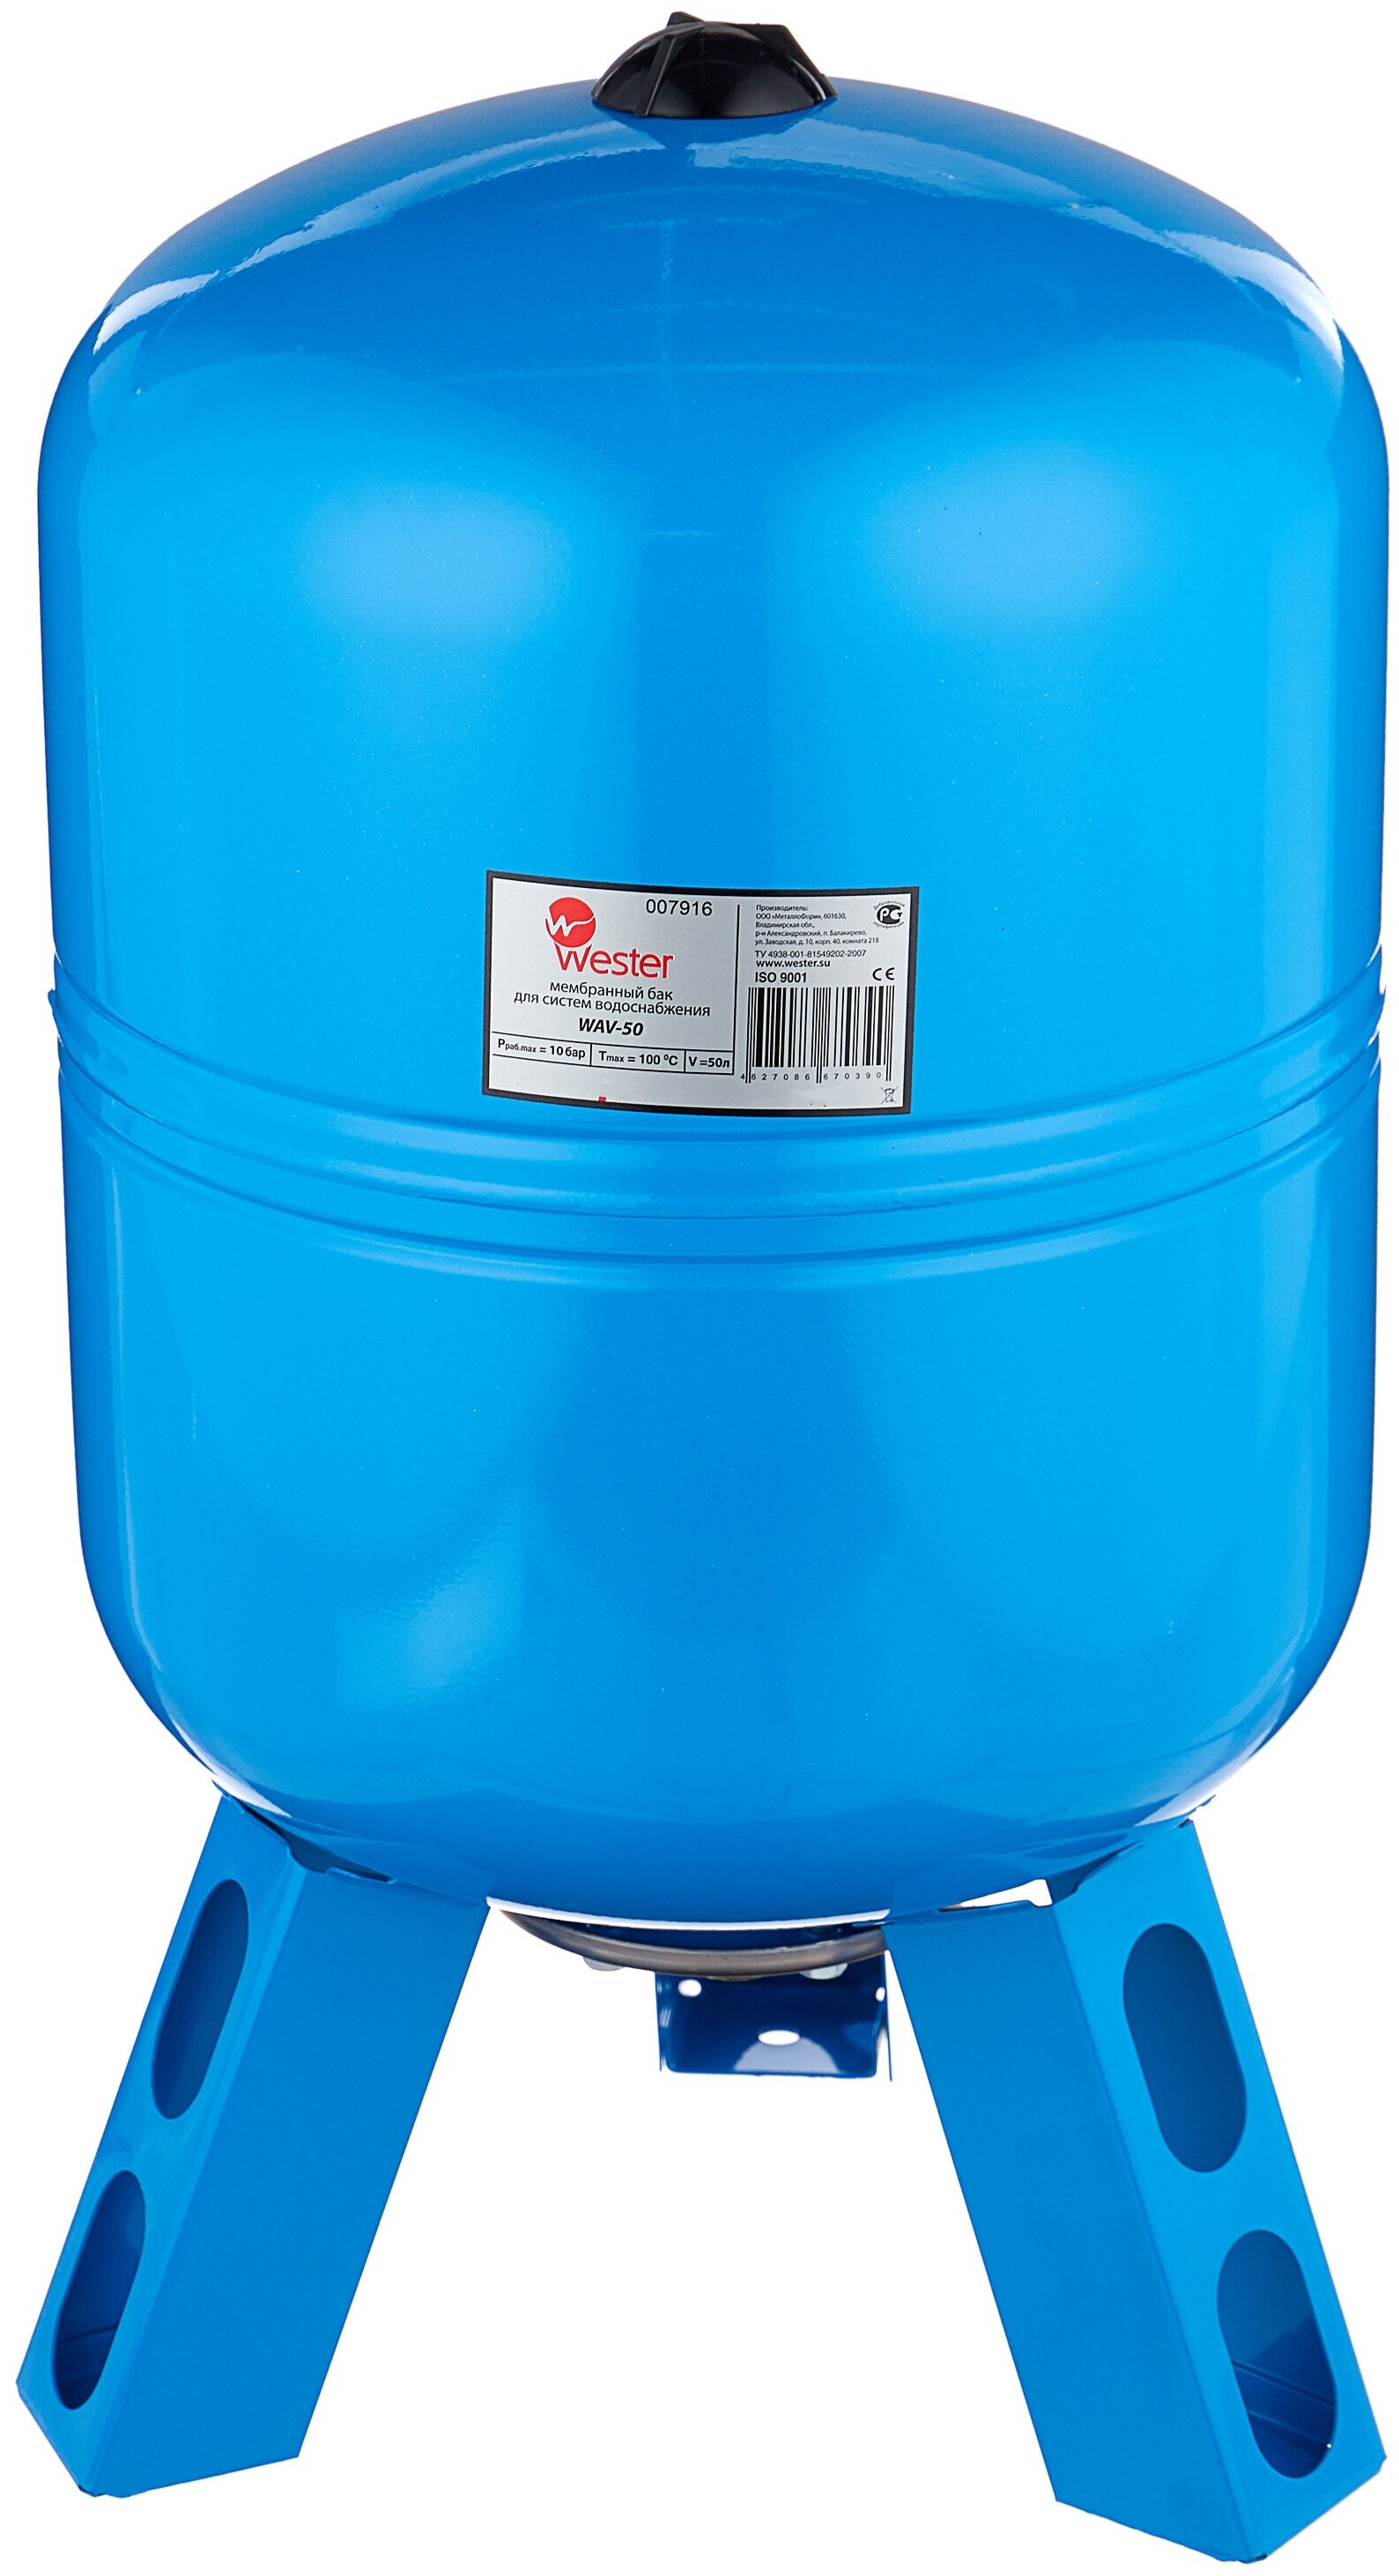 Гидроаккумулятор для водоснабжения WESTER WAV 50л вертикальный  — купить инженерную сантехнику в Кургане, цены в интернет-магазине «АкваТехника»